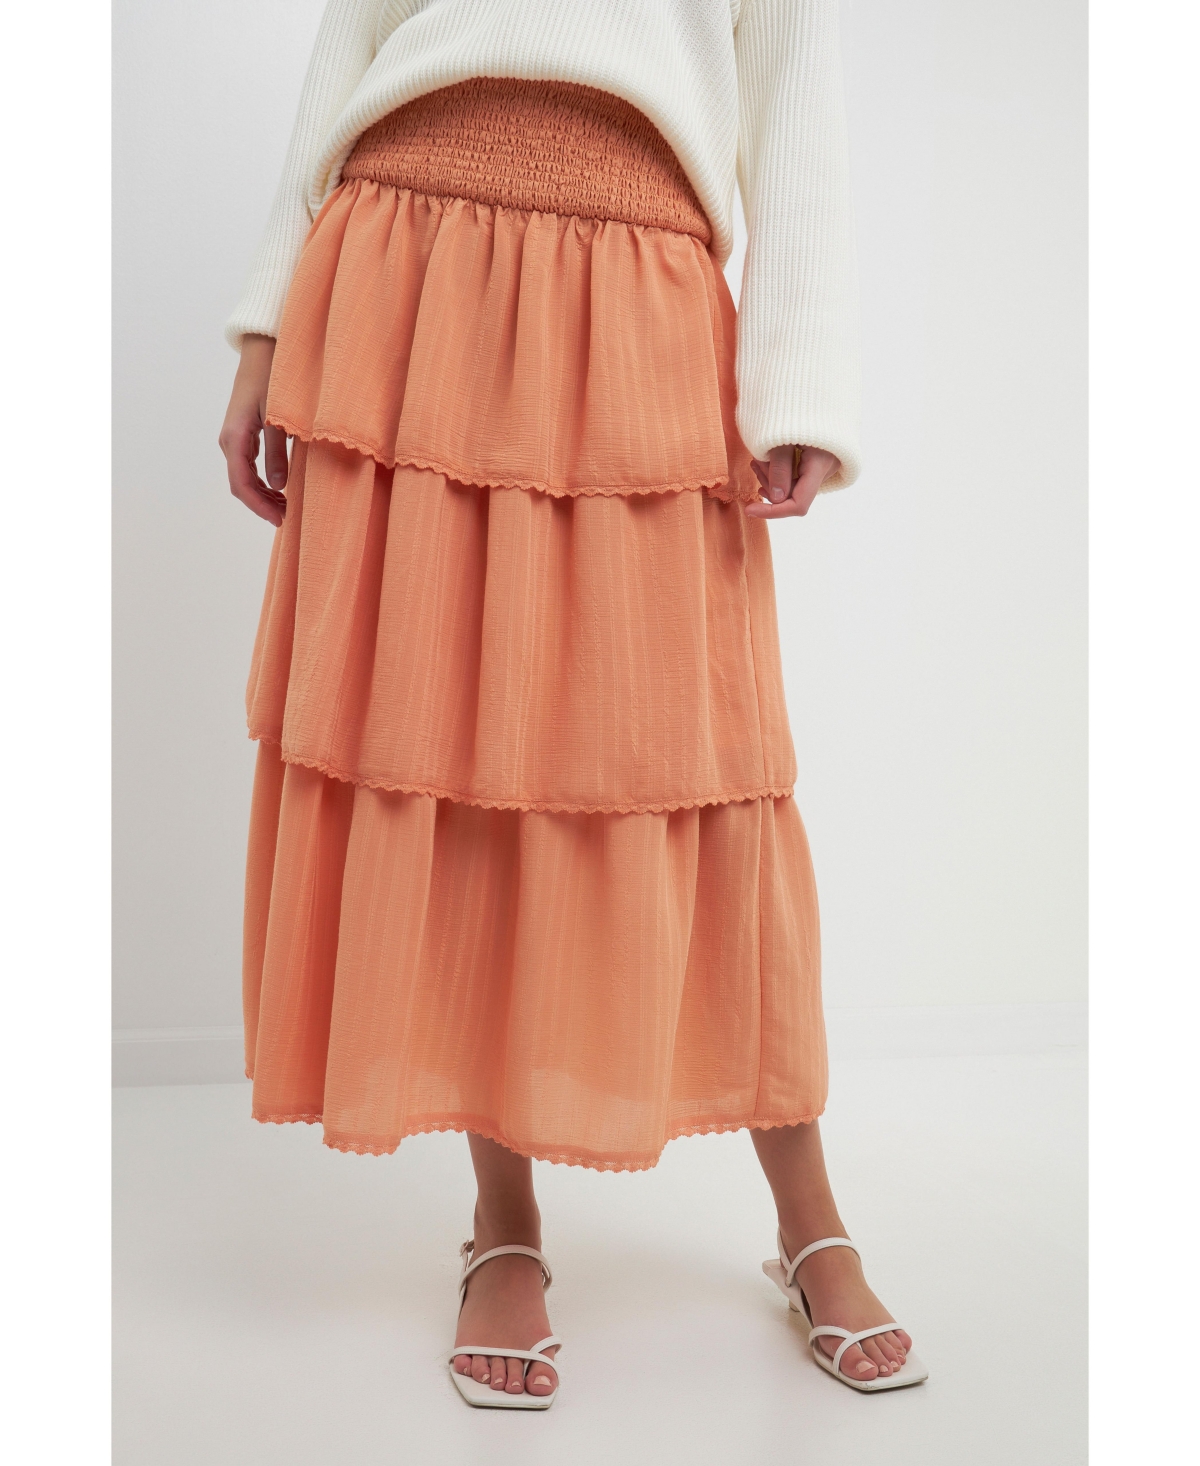 Women's Smocked Ruffle Tiered Skirt - Tangerine